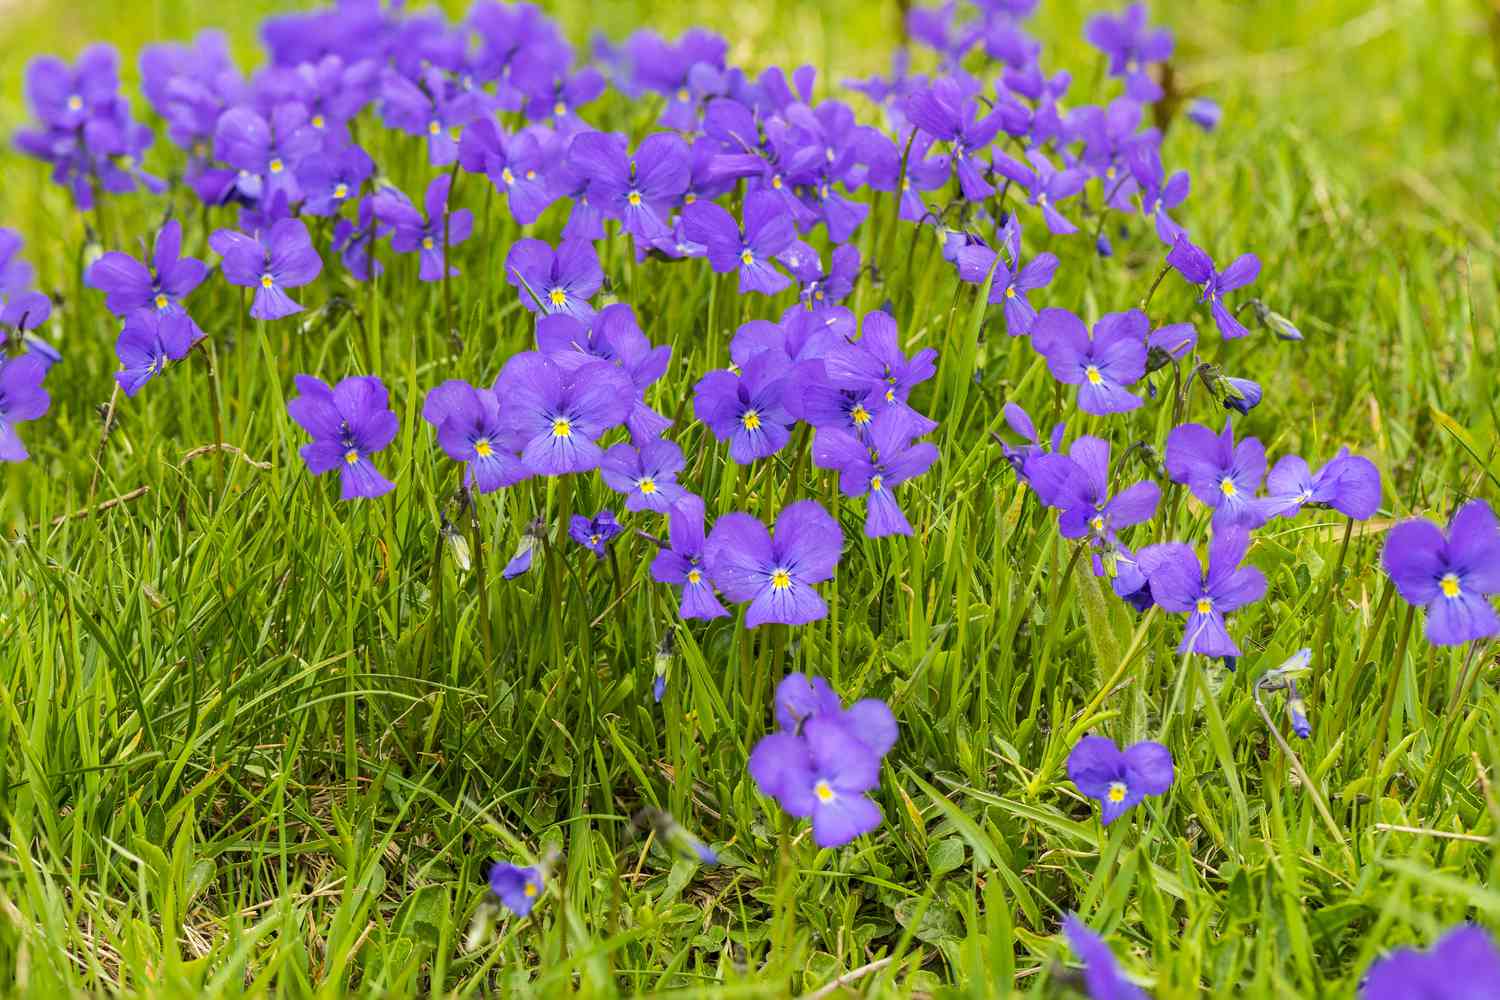 Purpurviolette Blumen wachsen wild im Gras.